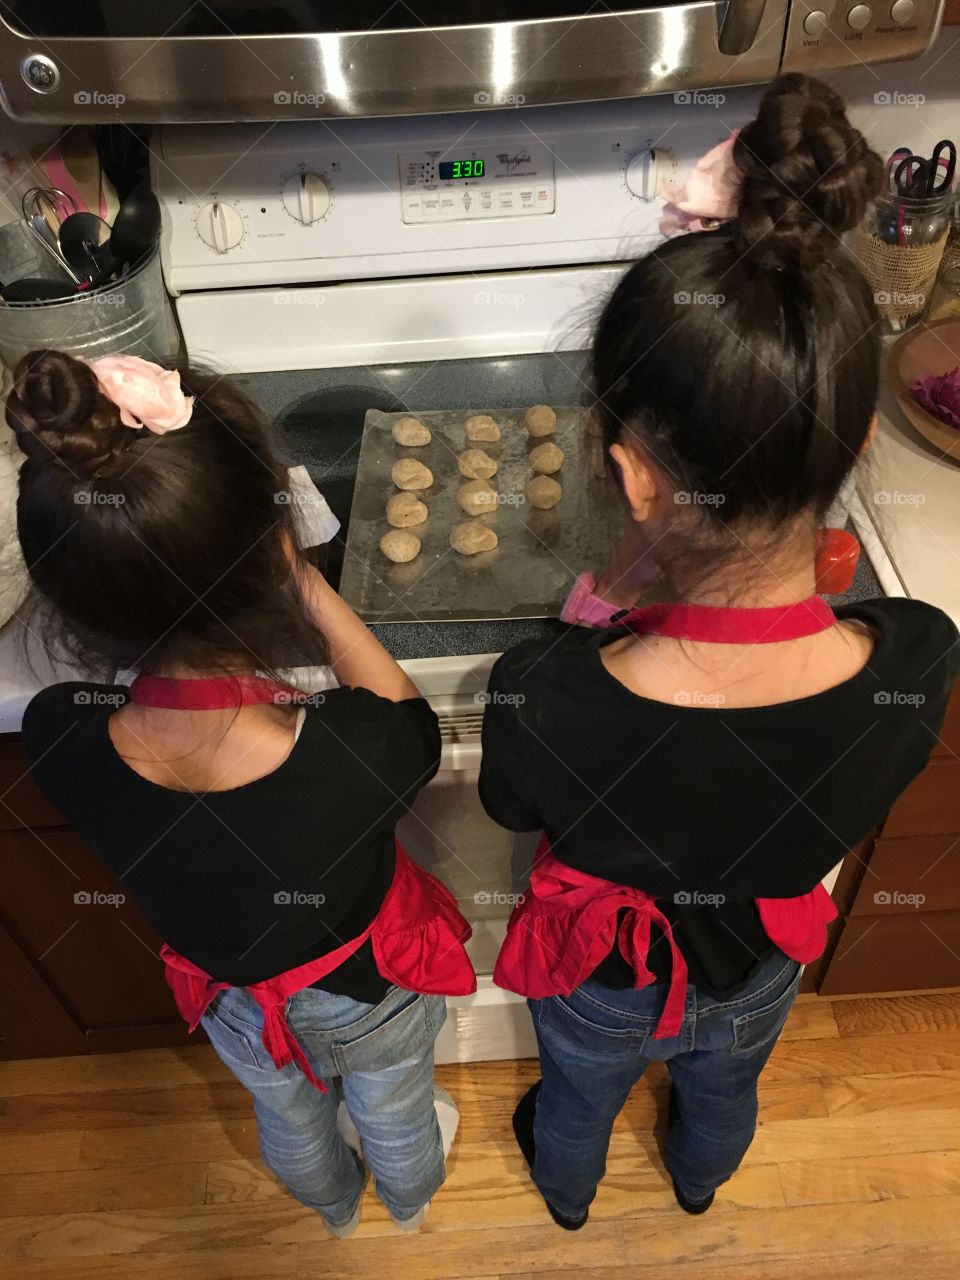 Making cookies 